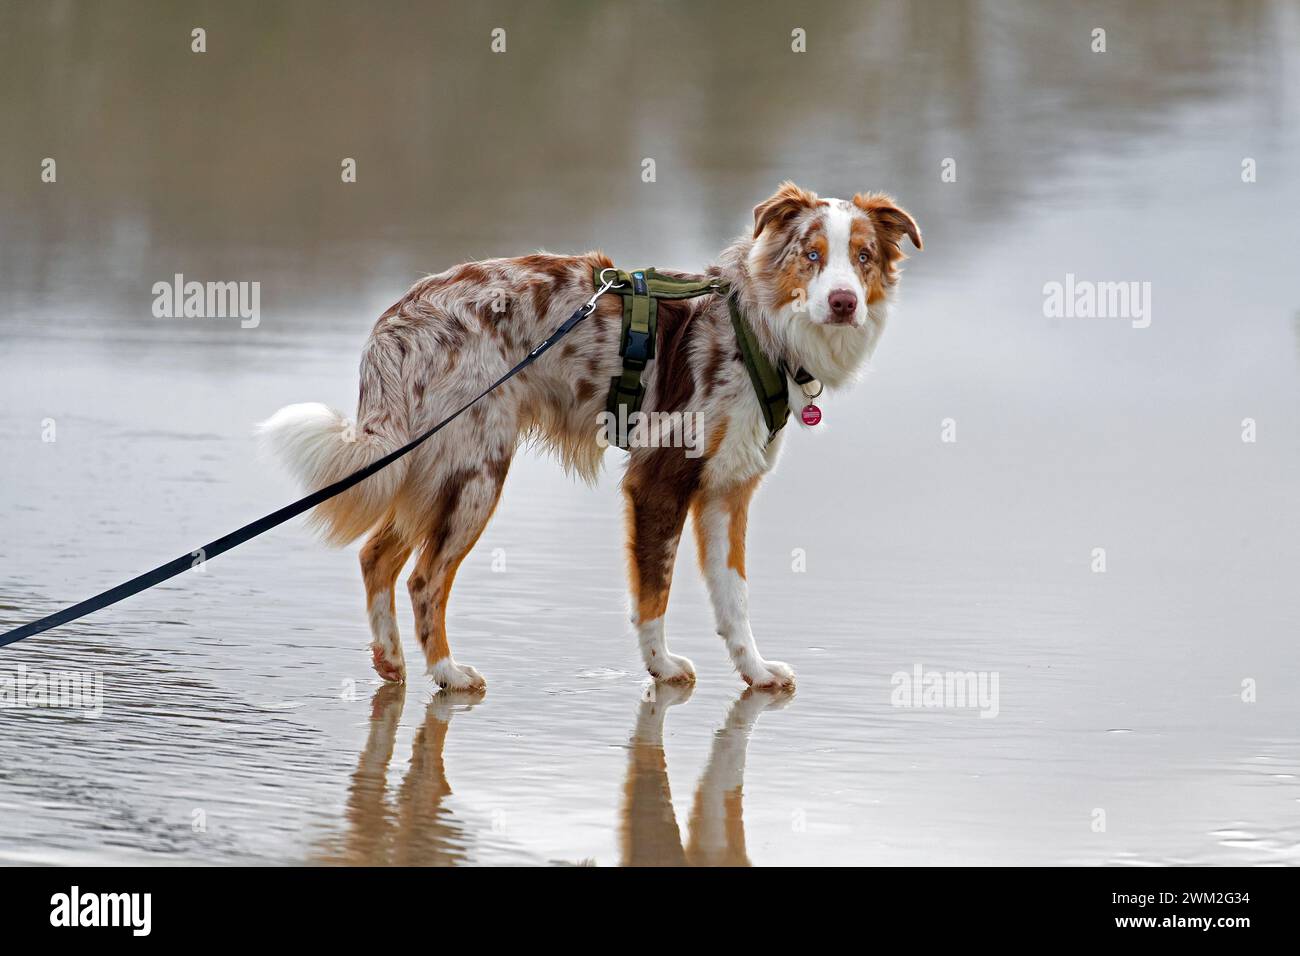 Pastore australiano / Aussie, razza di cane da allevamento degli Stati Uniti, che cammina al guinzaglio sulla spiaggia Foto Stock